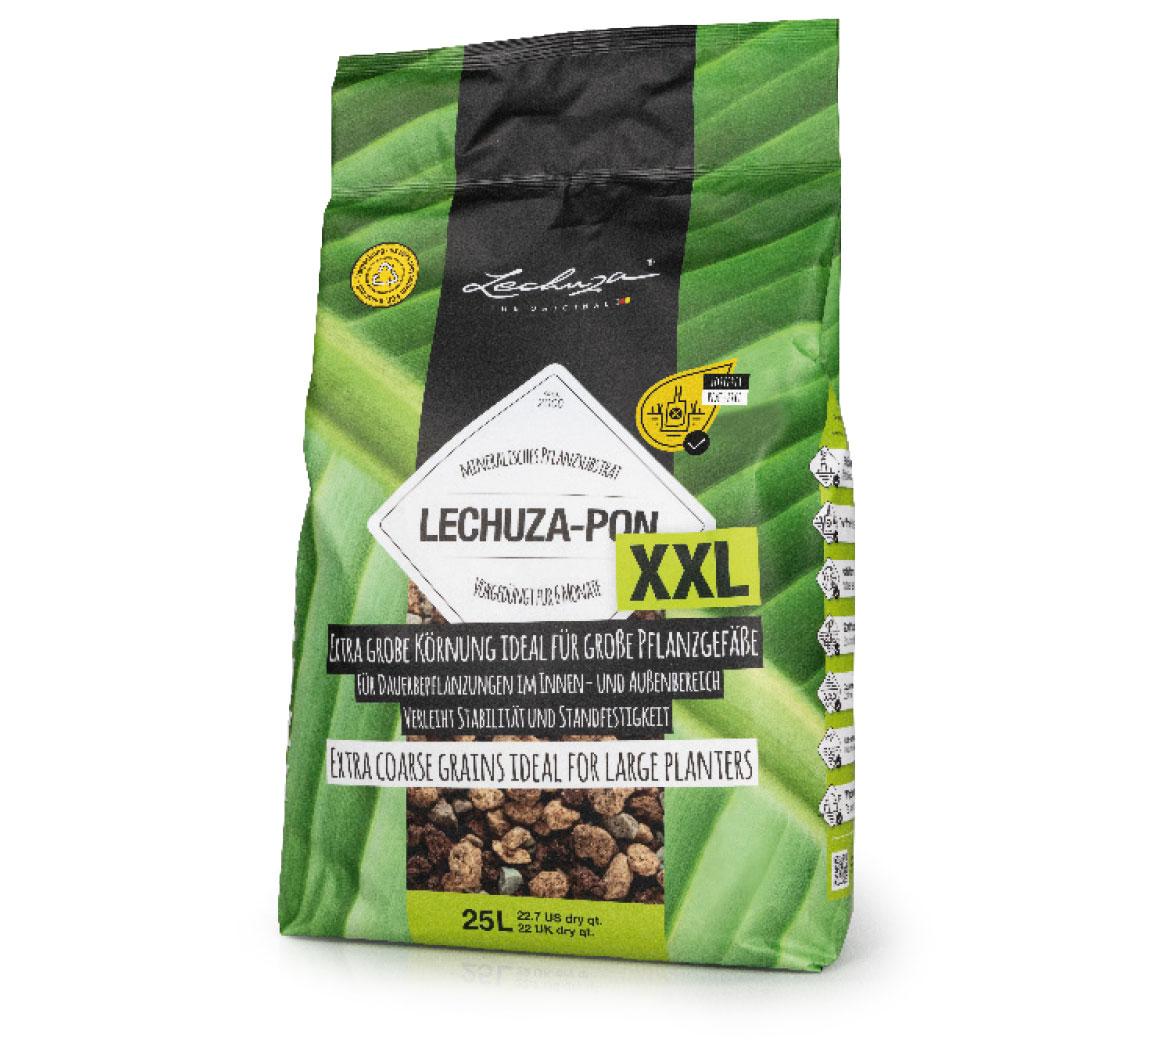 LECHUZA-PON XXL: De specialist voor grote plantenbakken